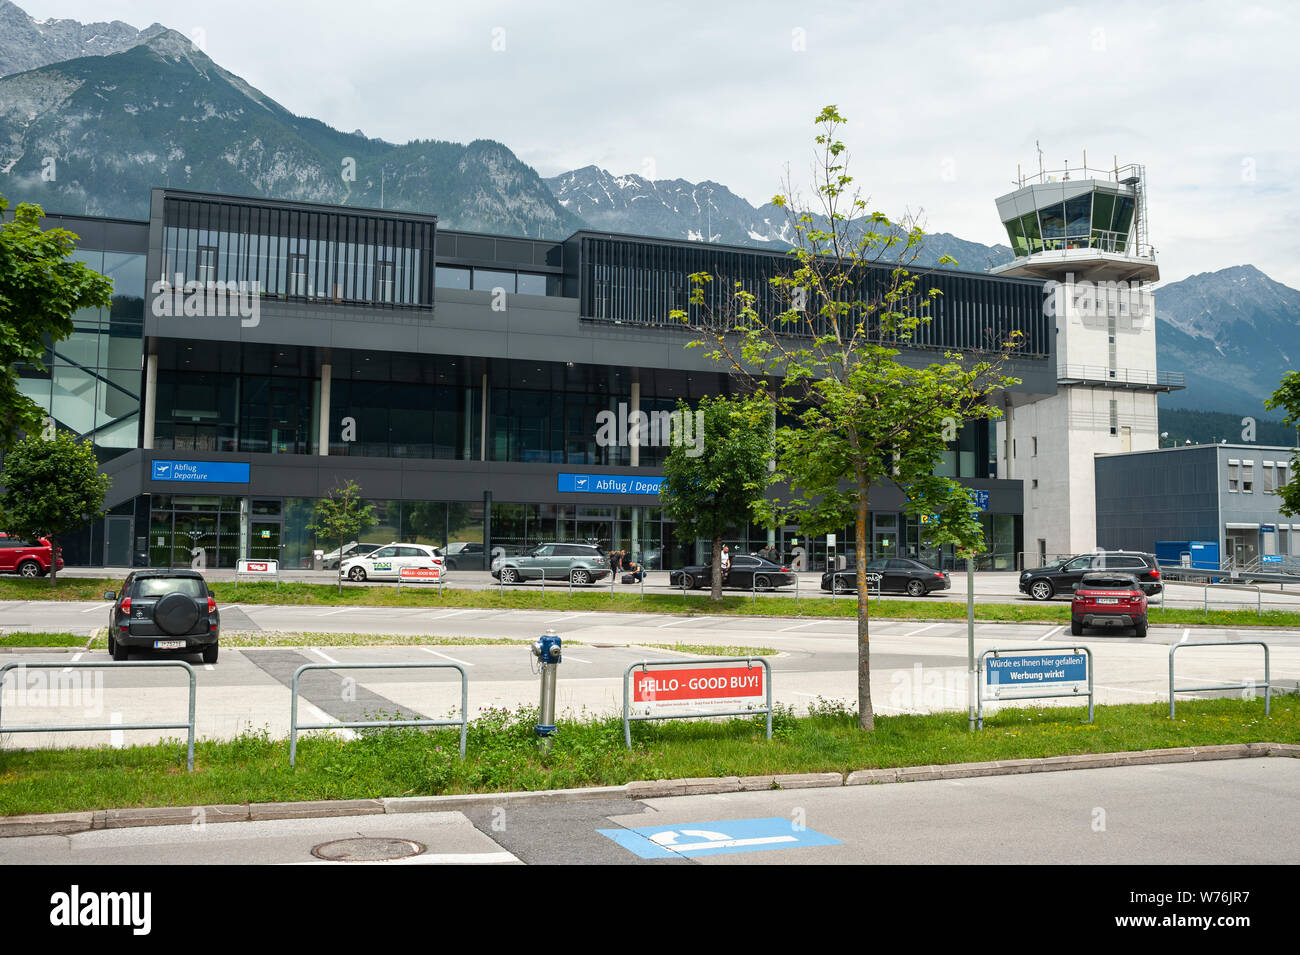 22.06.2019, Innsbruck, in Tirolo, Austria, Europa - vista esterna dall'aeroporto di Innsbruck con la torre di ATC e il terminale di partenza e di arrivo. Foto Stock